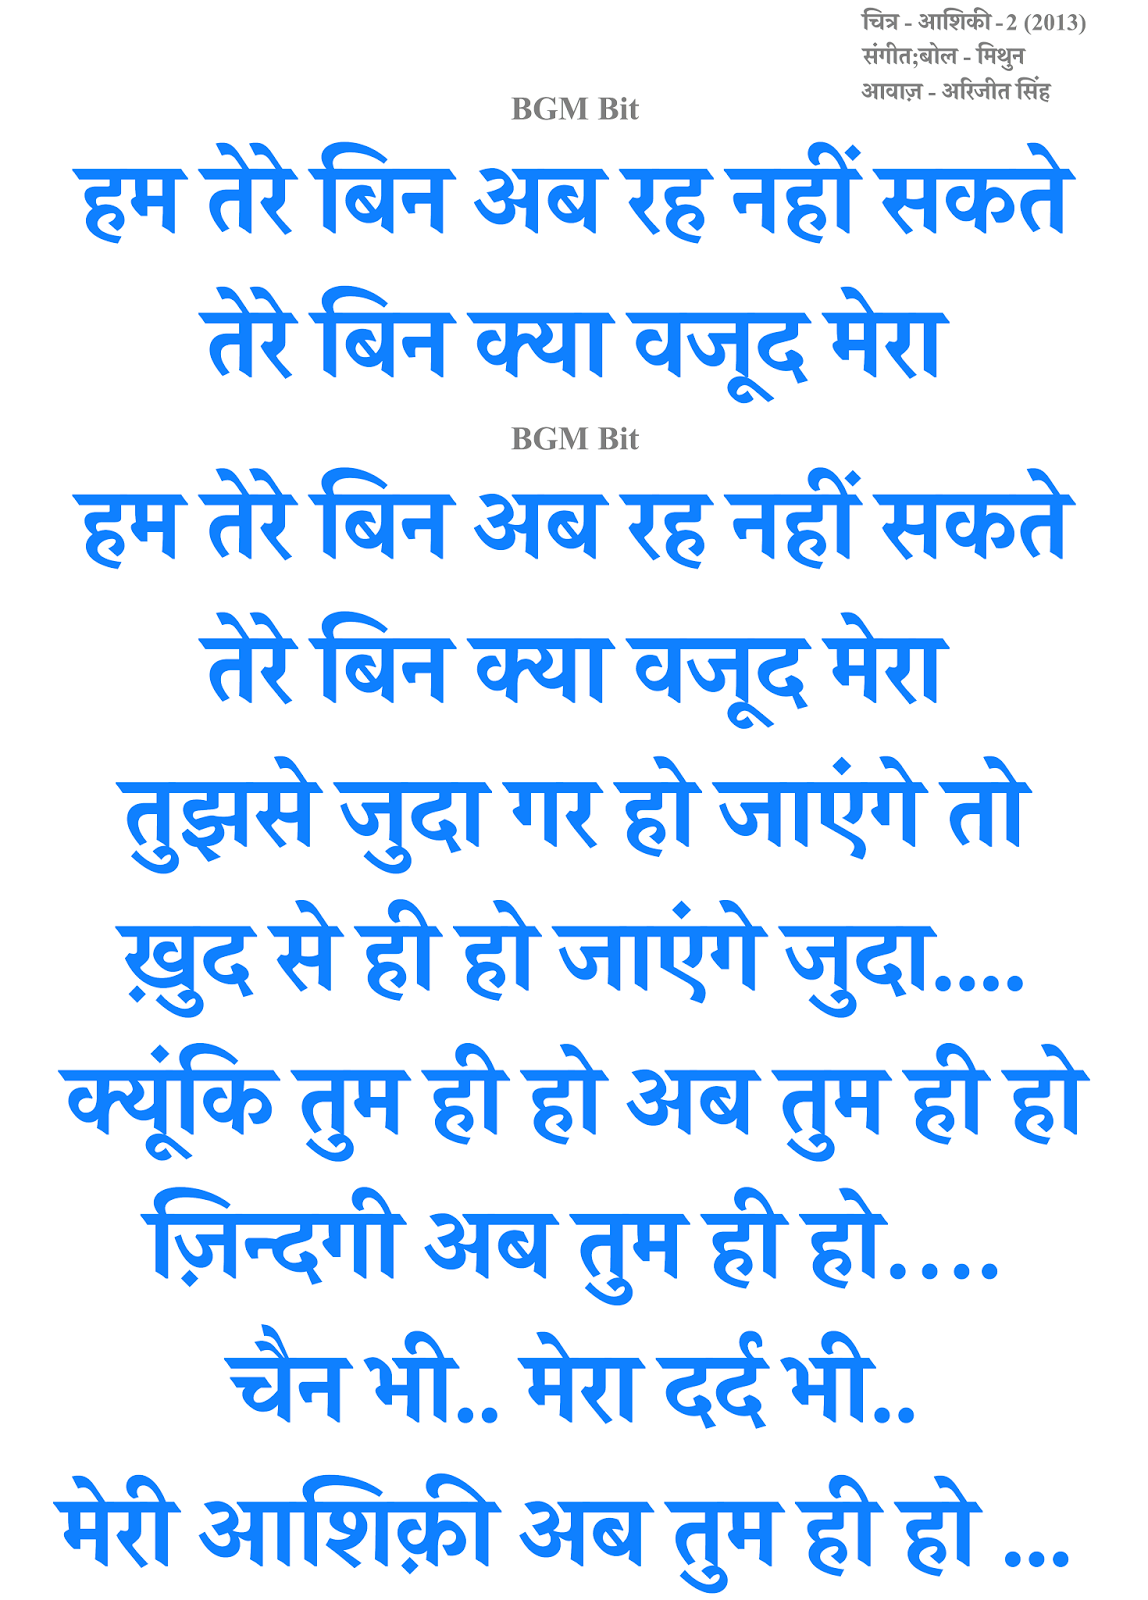 lyrics of new hindi song